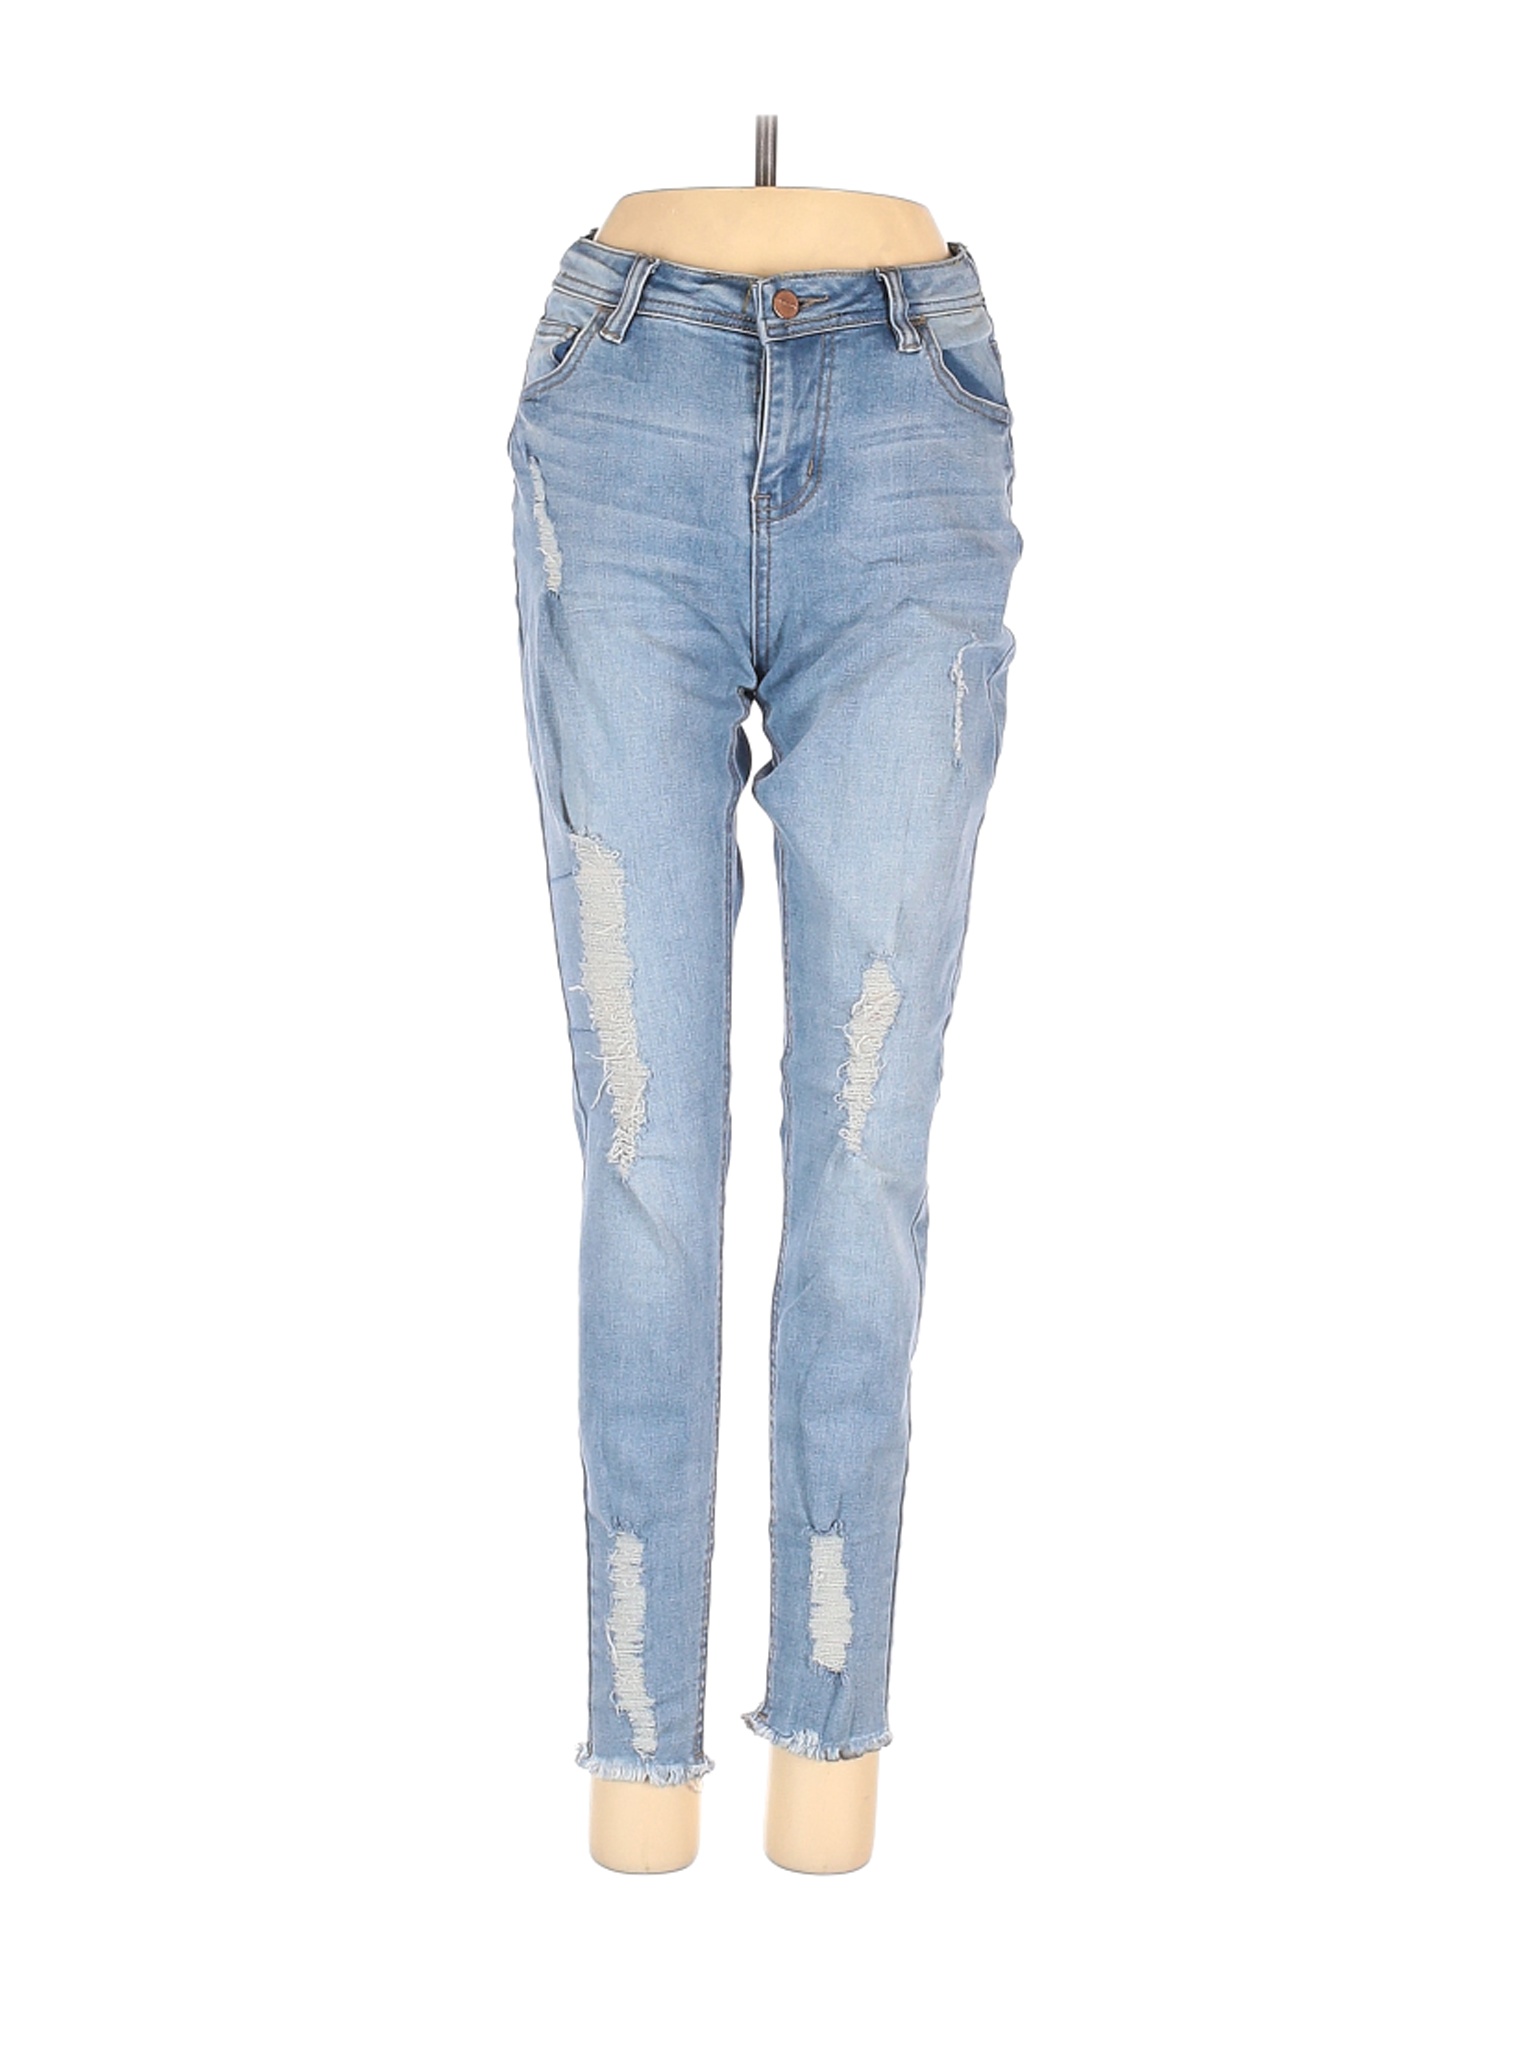 Penshoppe Women Blue Jeans 26W | eBay